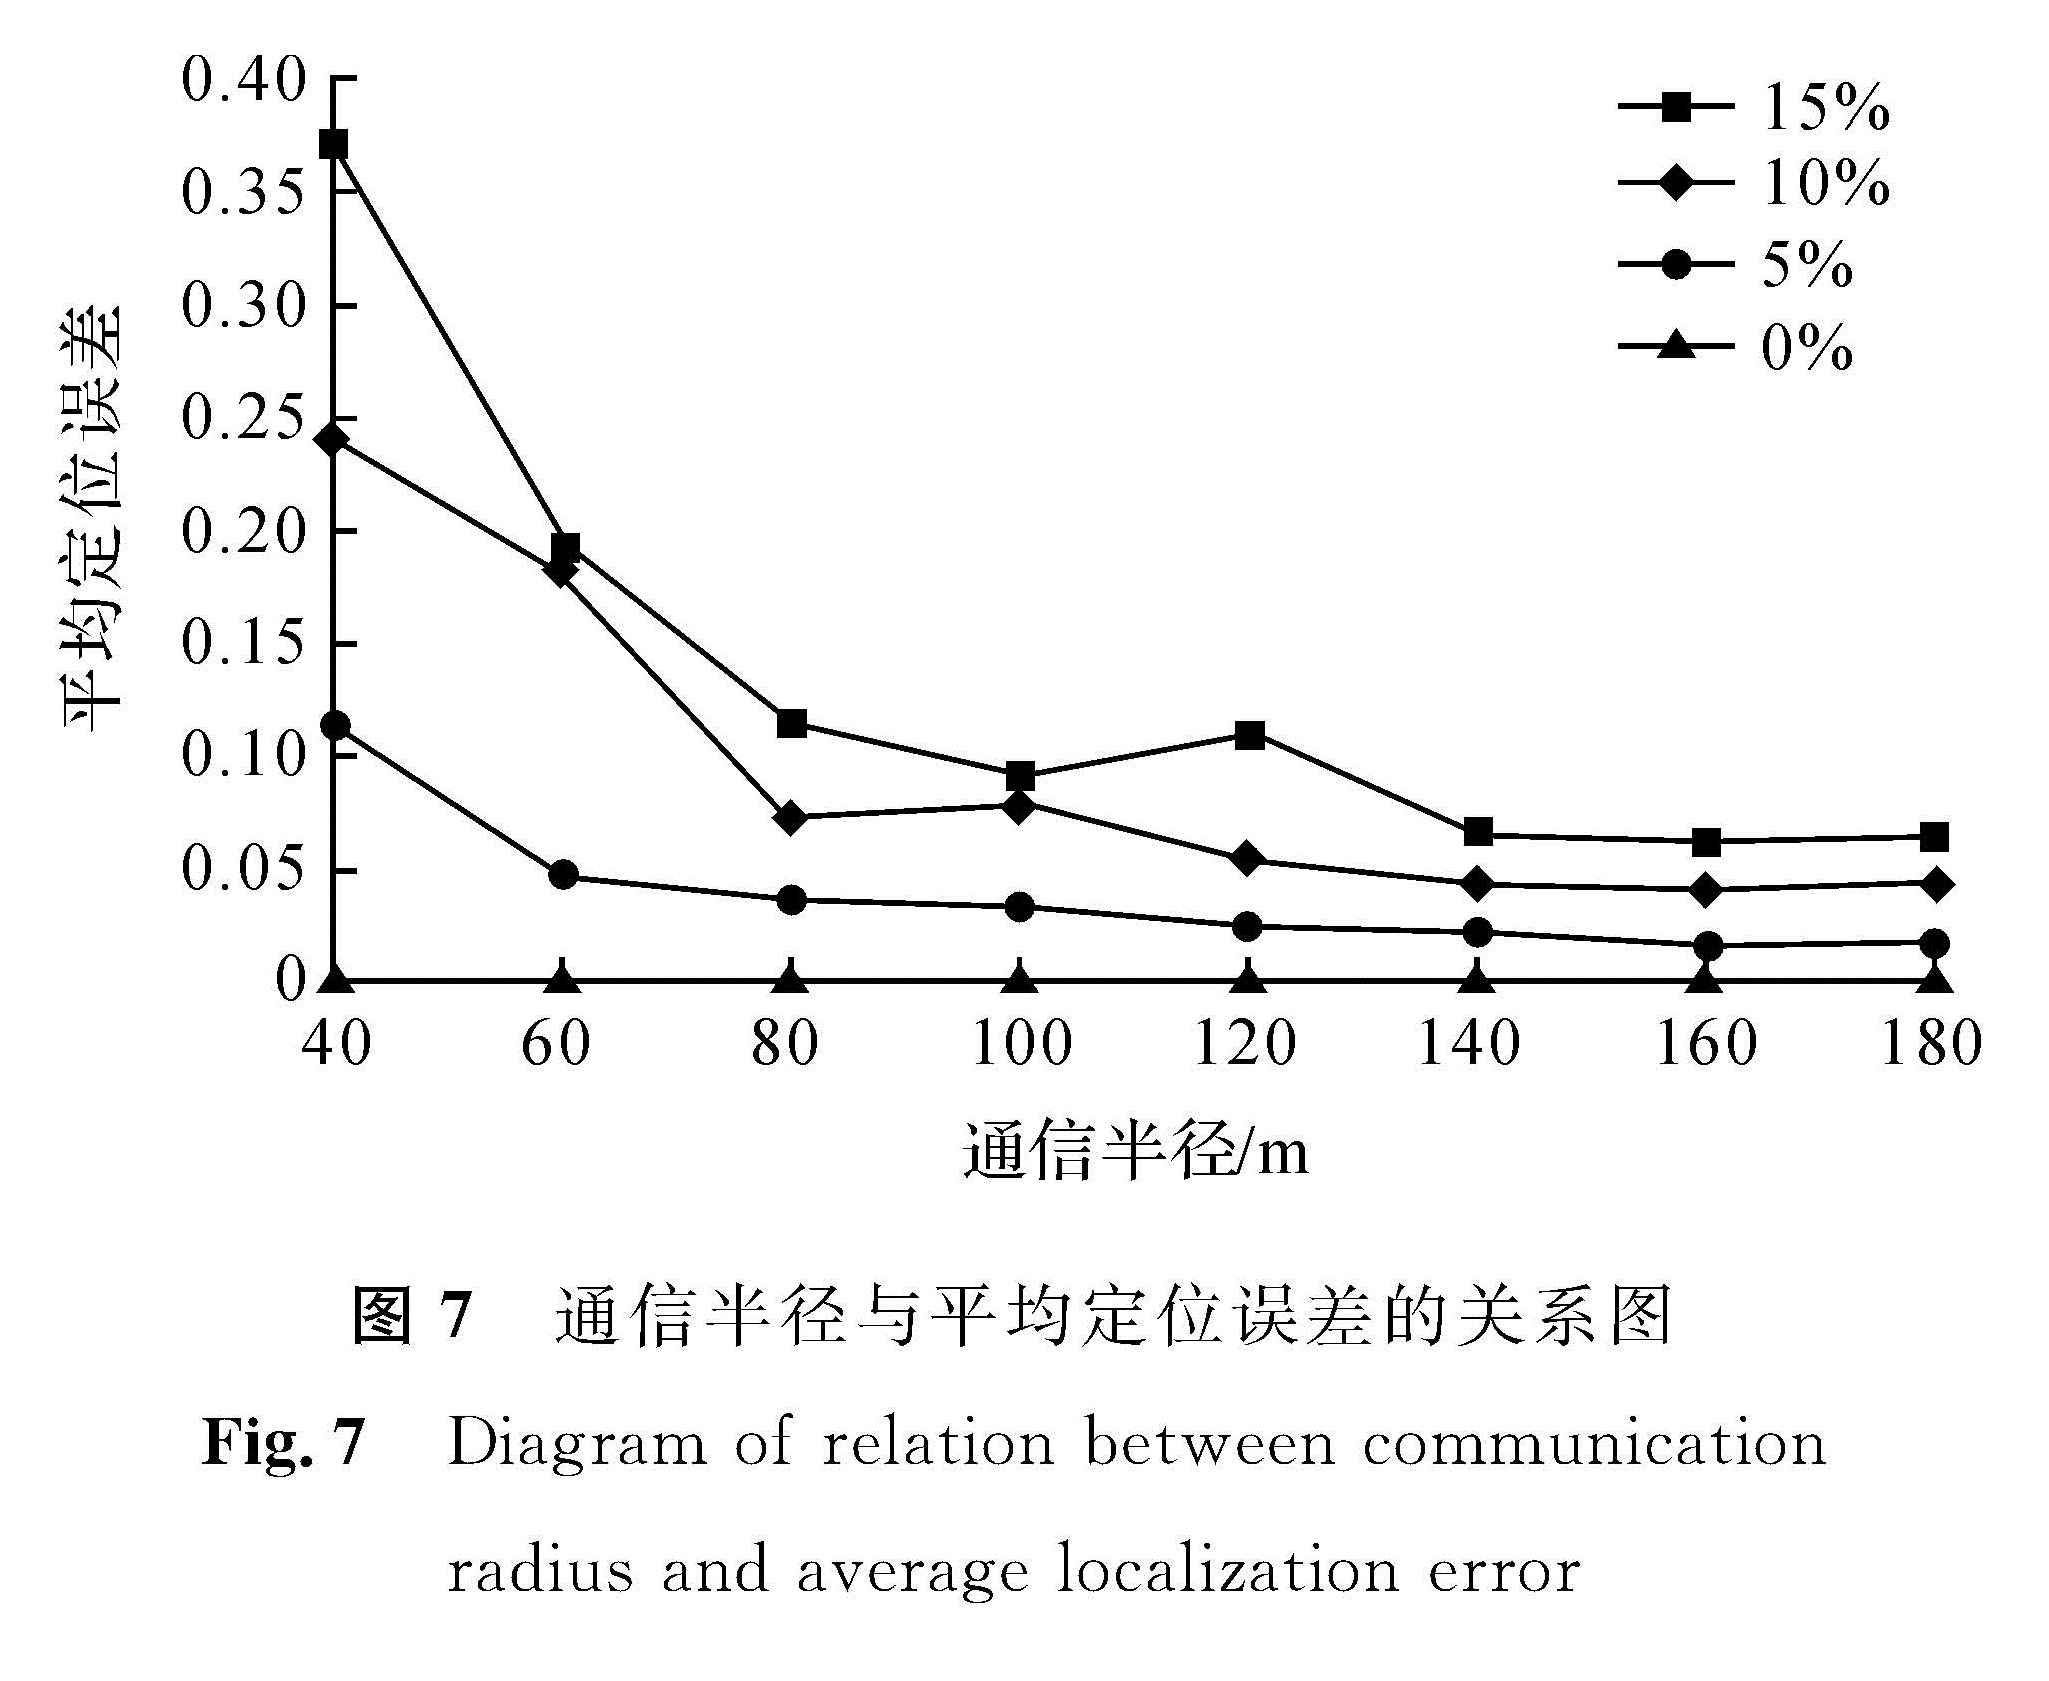 图7 通信半径与平均定位误差的关系图<br/>Fig.7 Diagram of relation between communication radius and average localization error